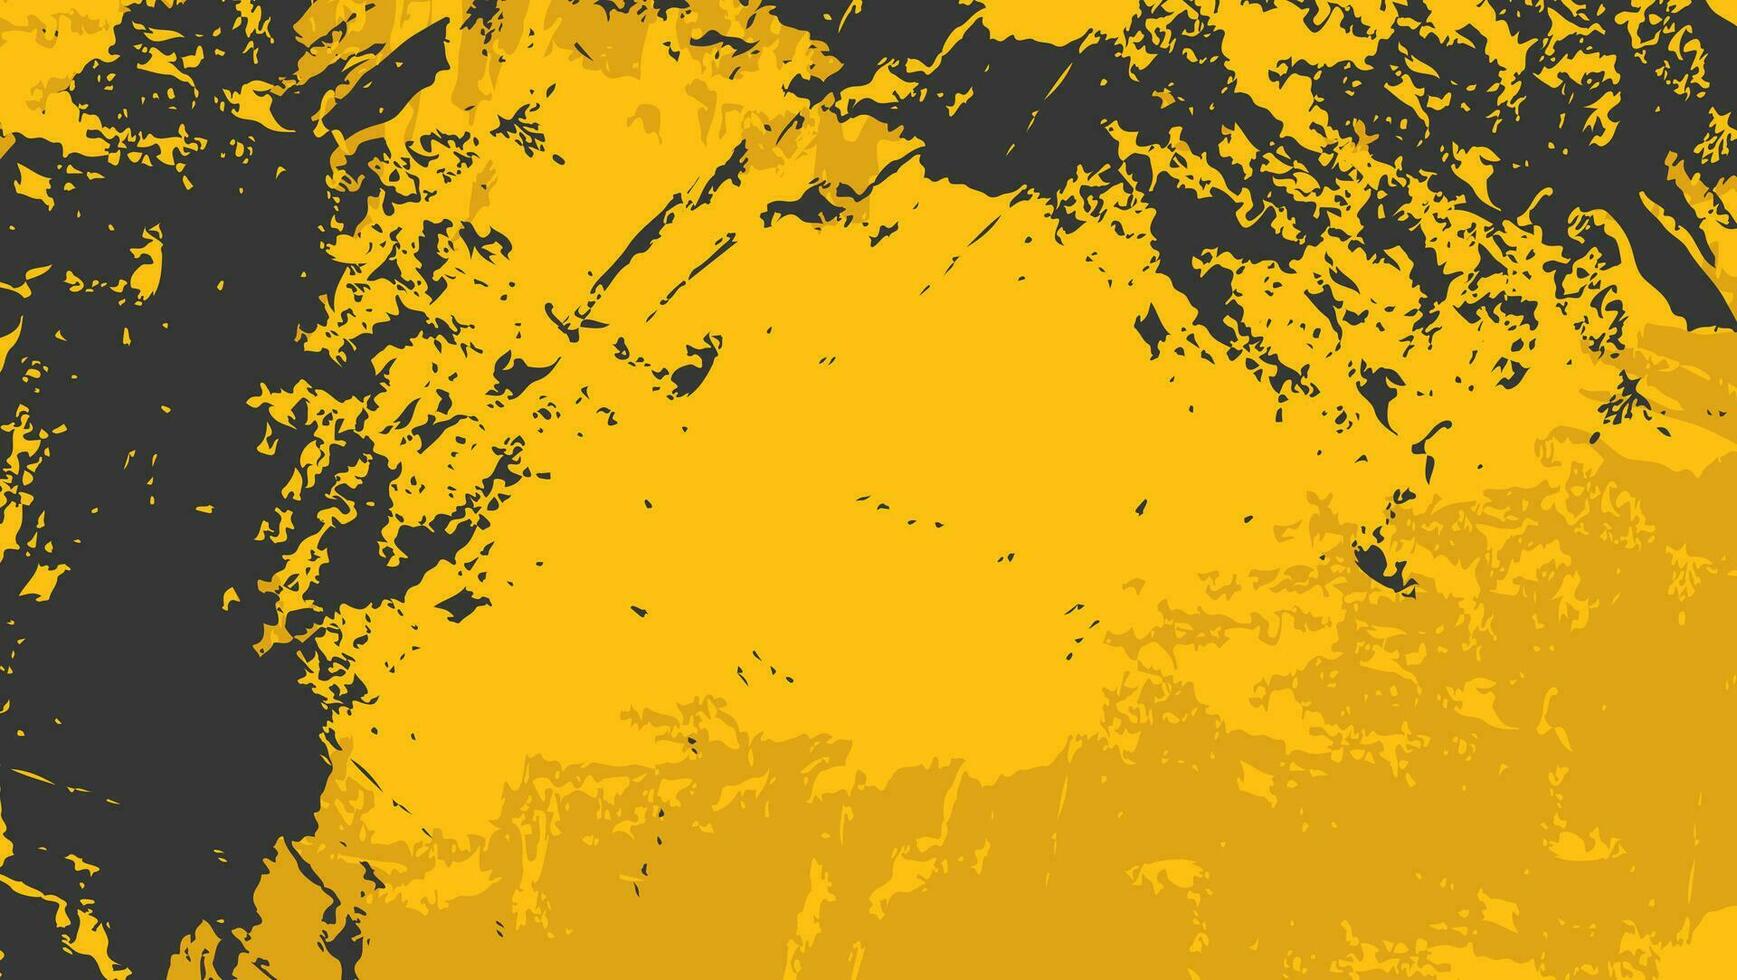 astratto giallo nero graffio grunge texture di sfondo vettore